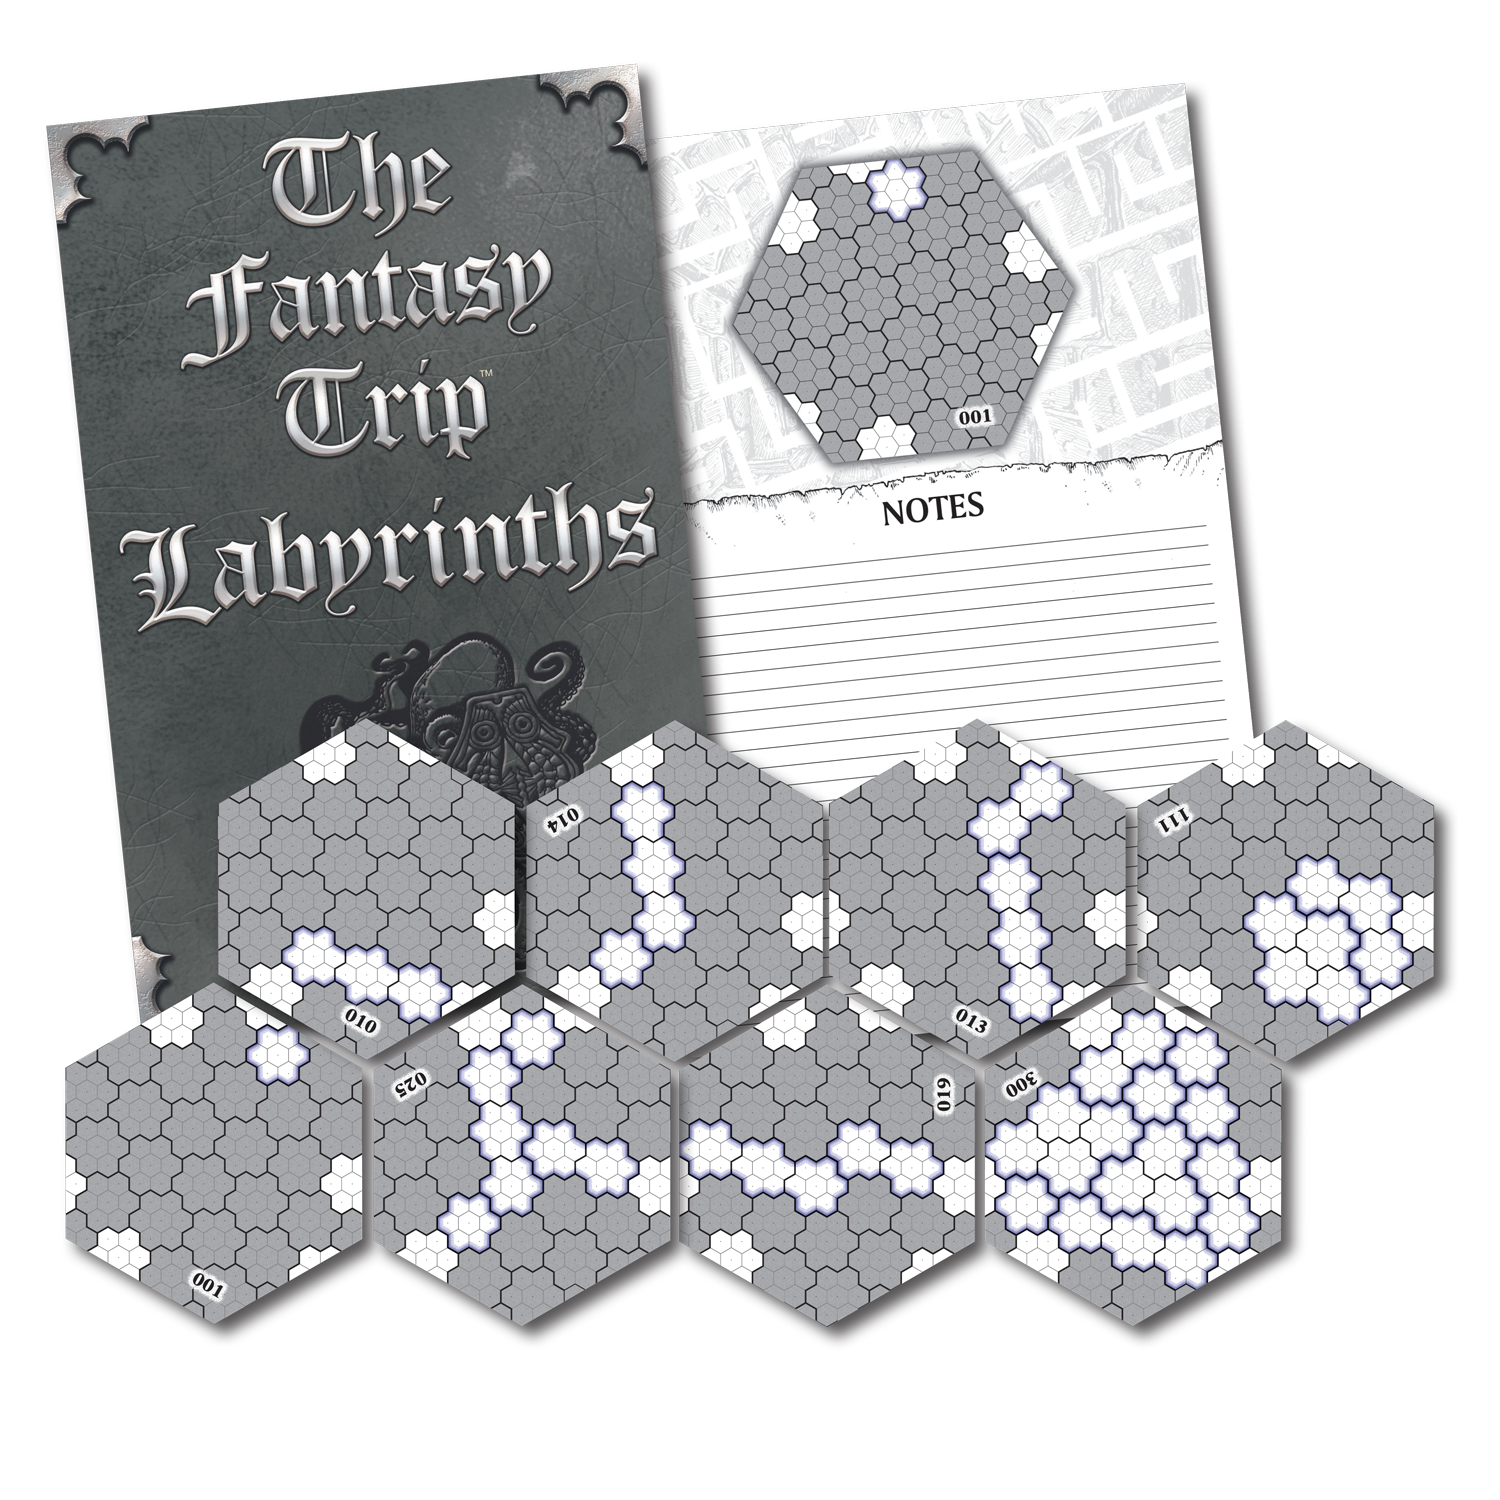 The Fantasy Trip Labyrinths